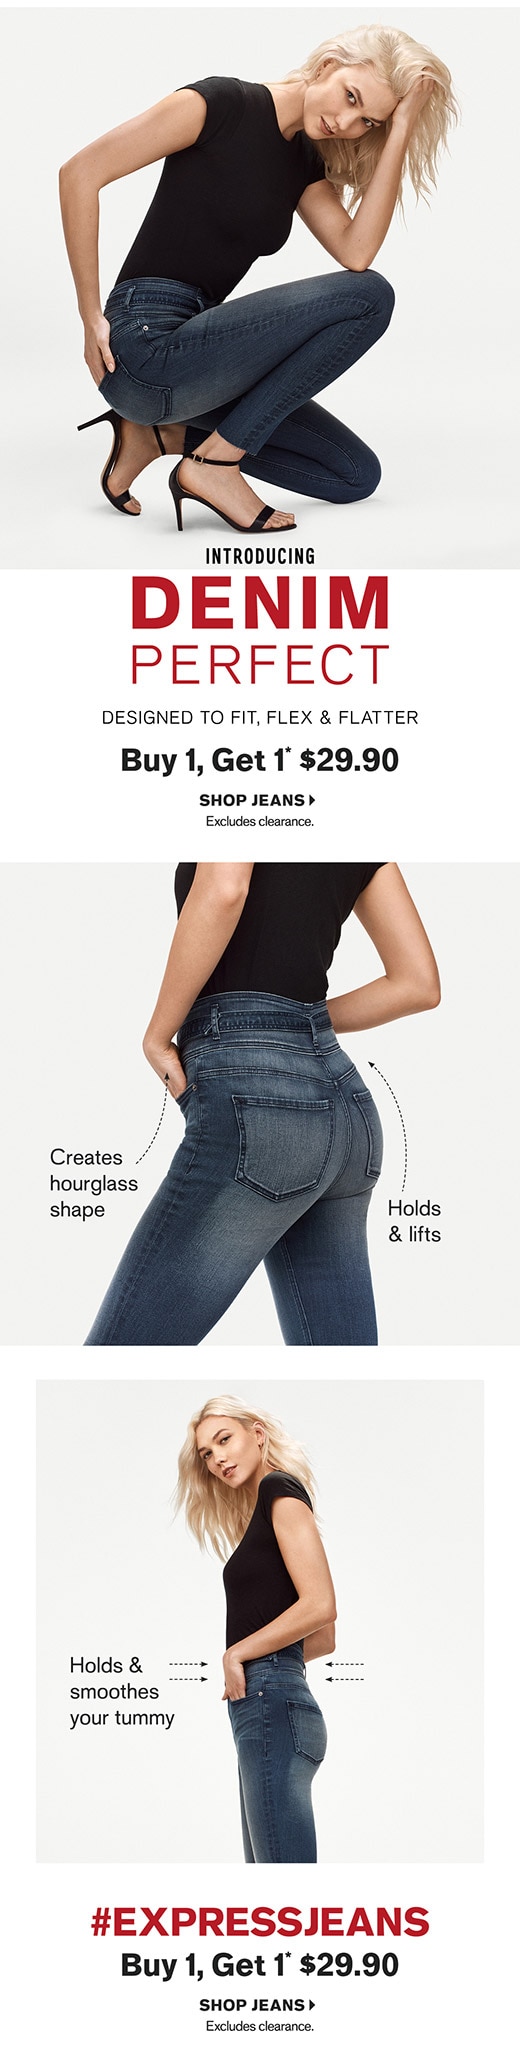 Shop BOGO $29.90 Jeans